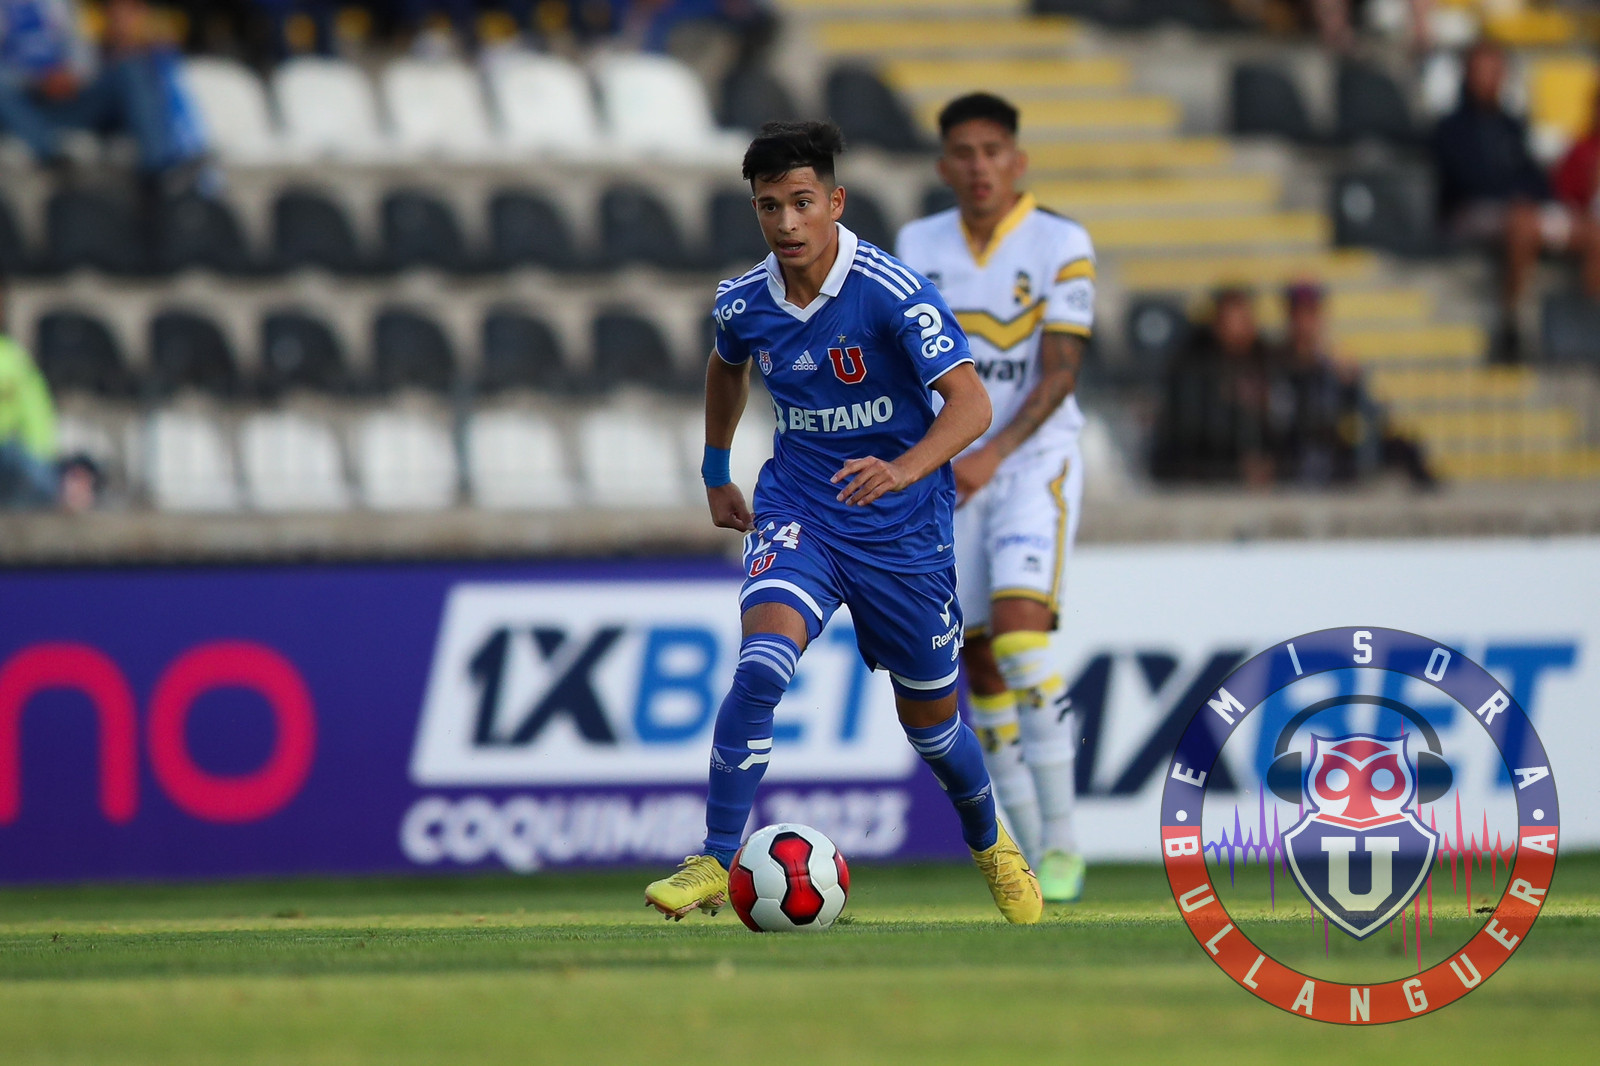 Siempre hay una primera vez: Los juveniles azules que debutaron frente a Coquimbo Unido